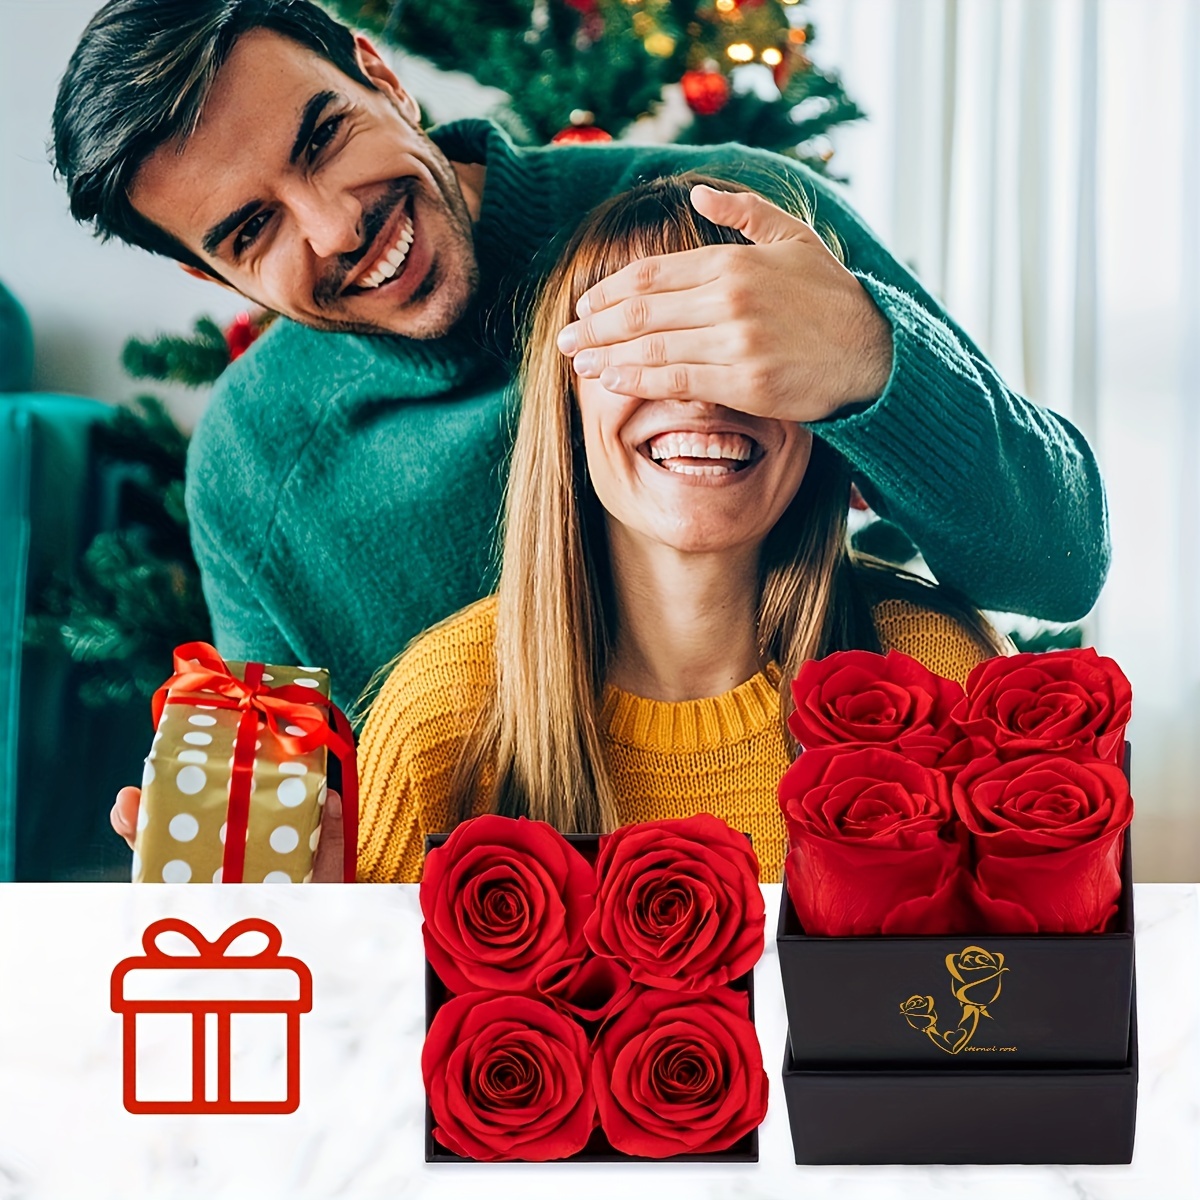 Caja regalo rosas rojas San Valentín picante - Cajas regalo - San Valentín  en León. Flor & Flora, flores para todas las ocasiones.